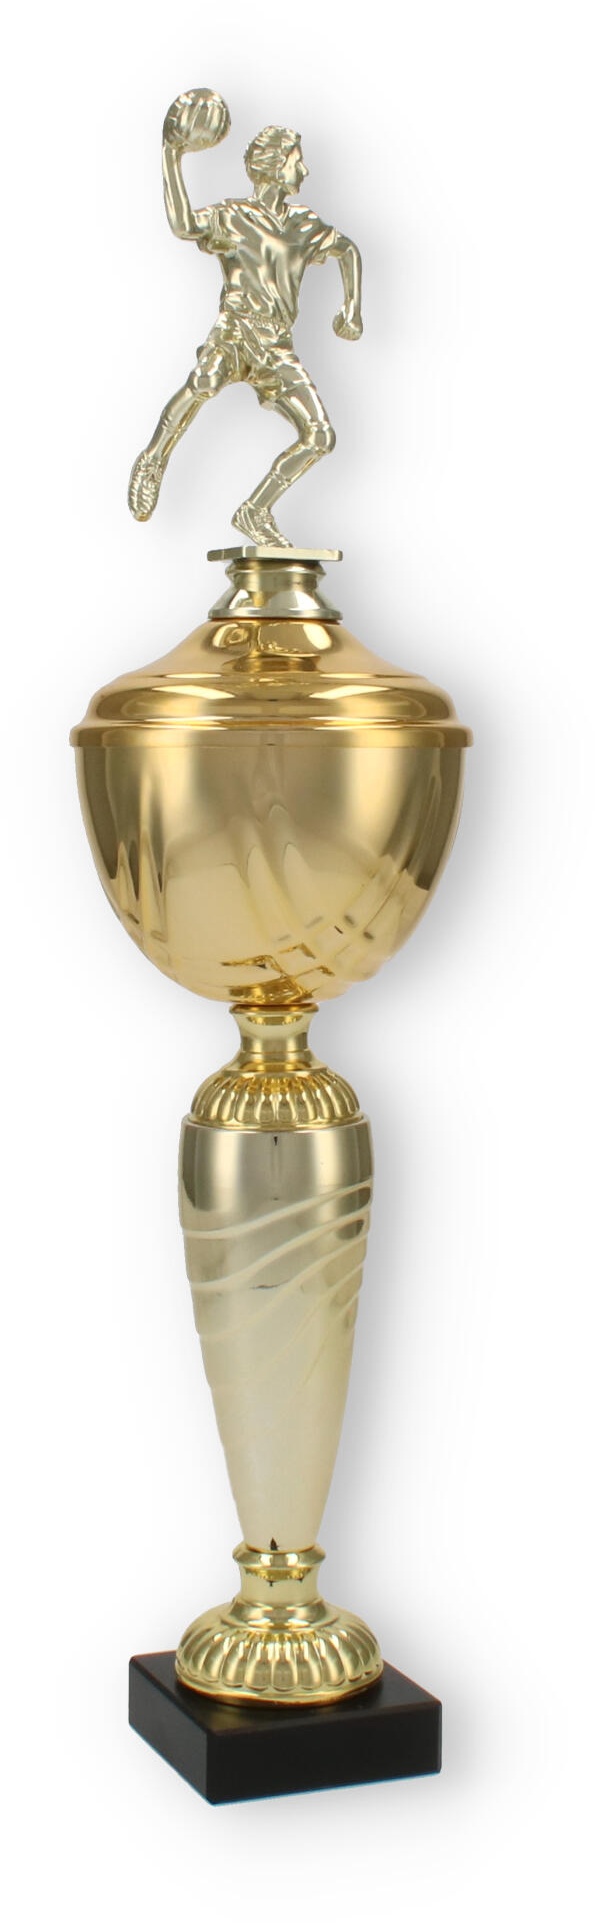 Pokal Dore - Handballspieler 43,0cm